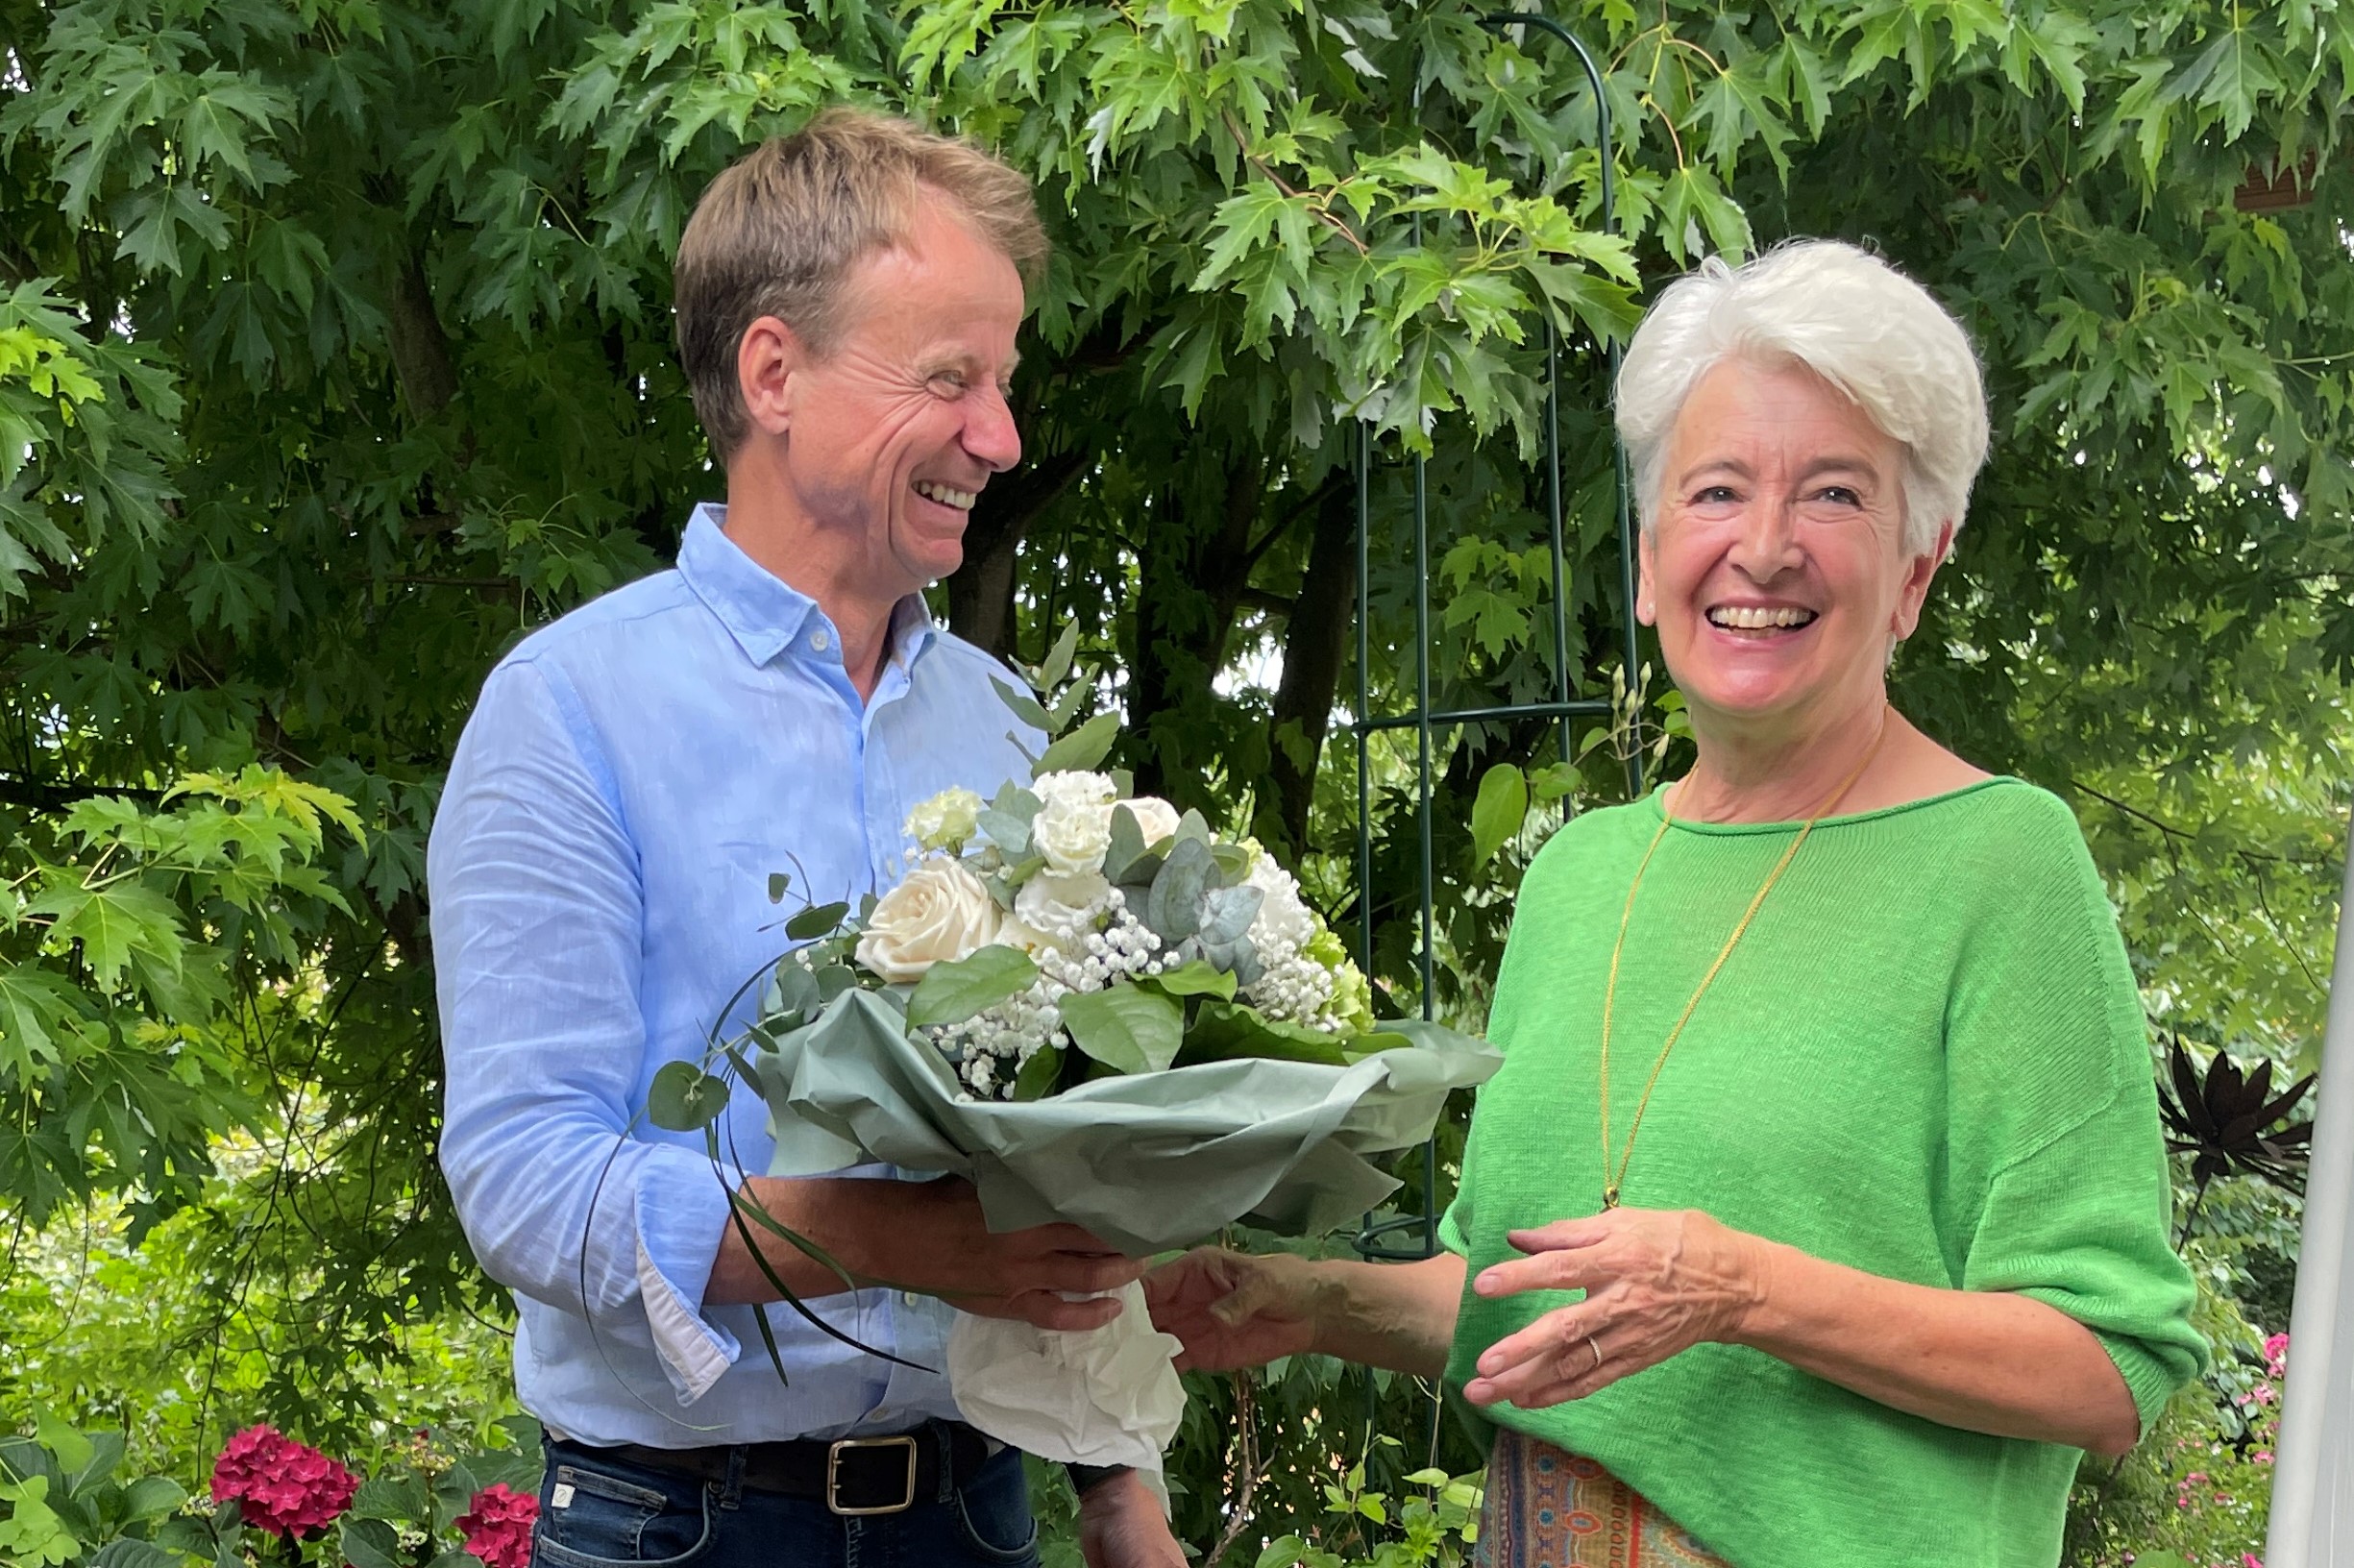 Neuer Lions Präsident M. Siebert übergibt einen Blumenstrauß an seine Vorgängerin M. Münch